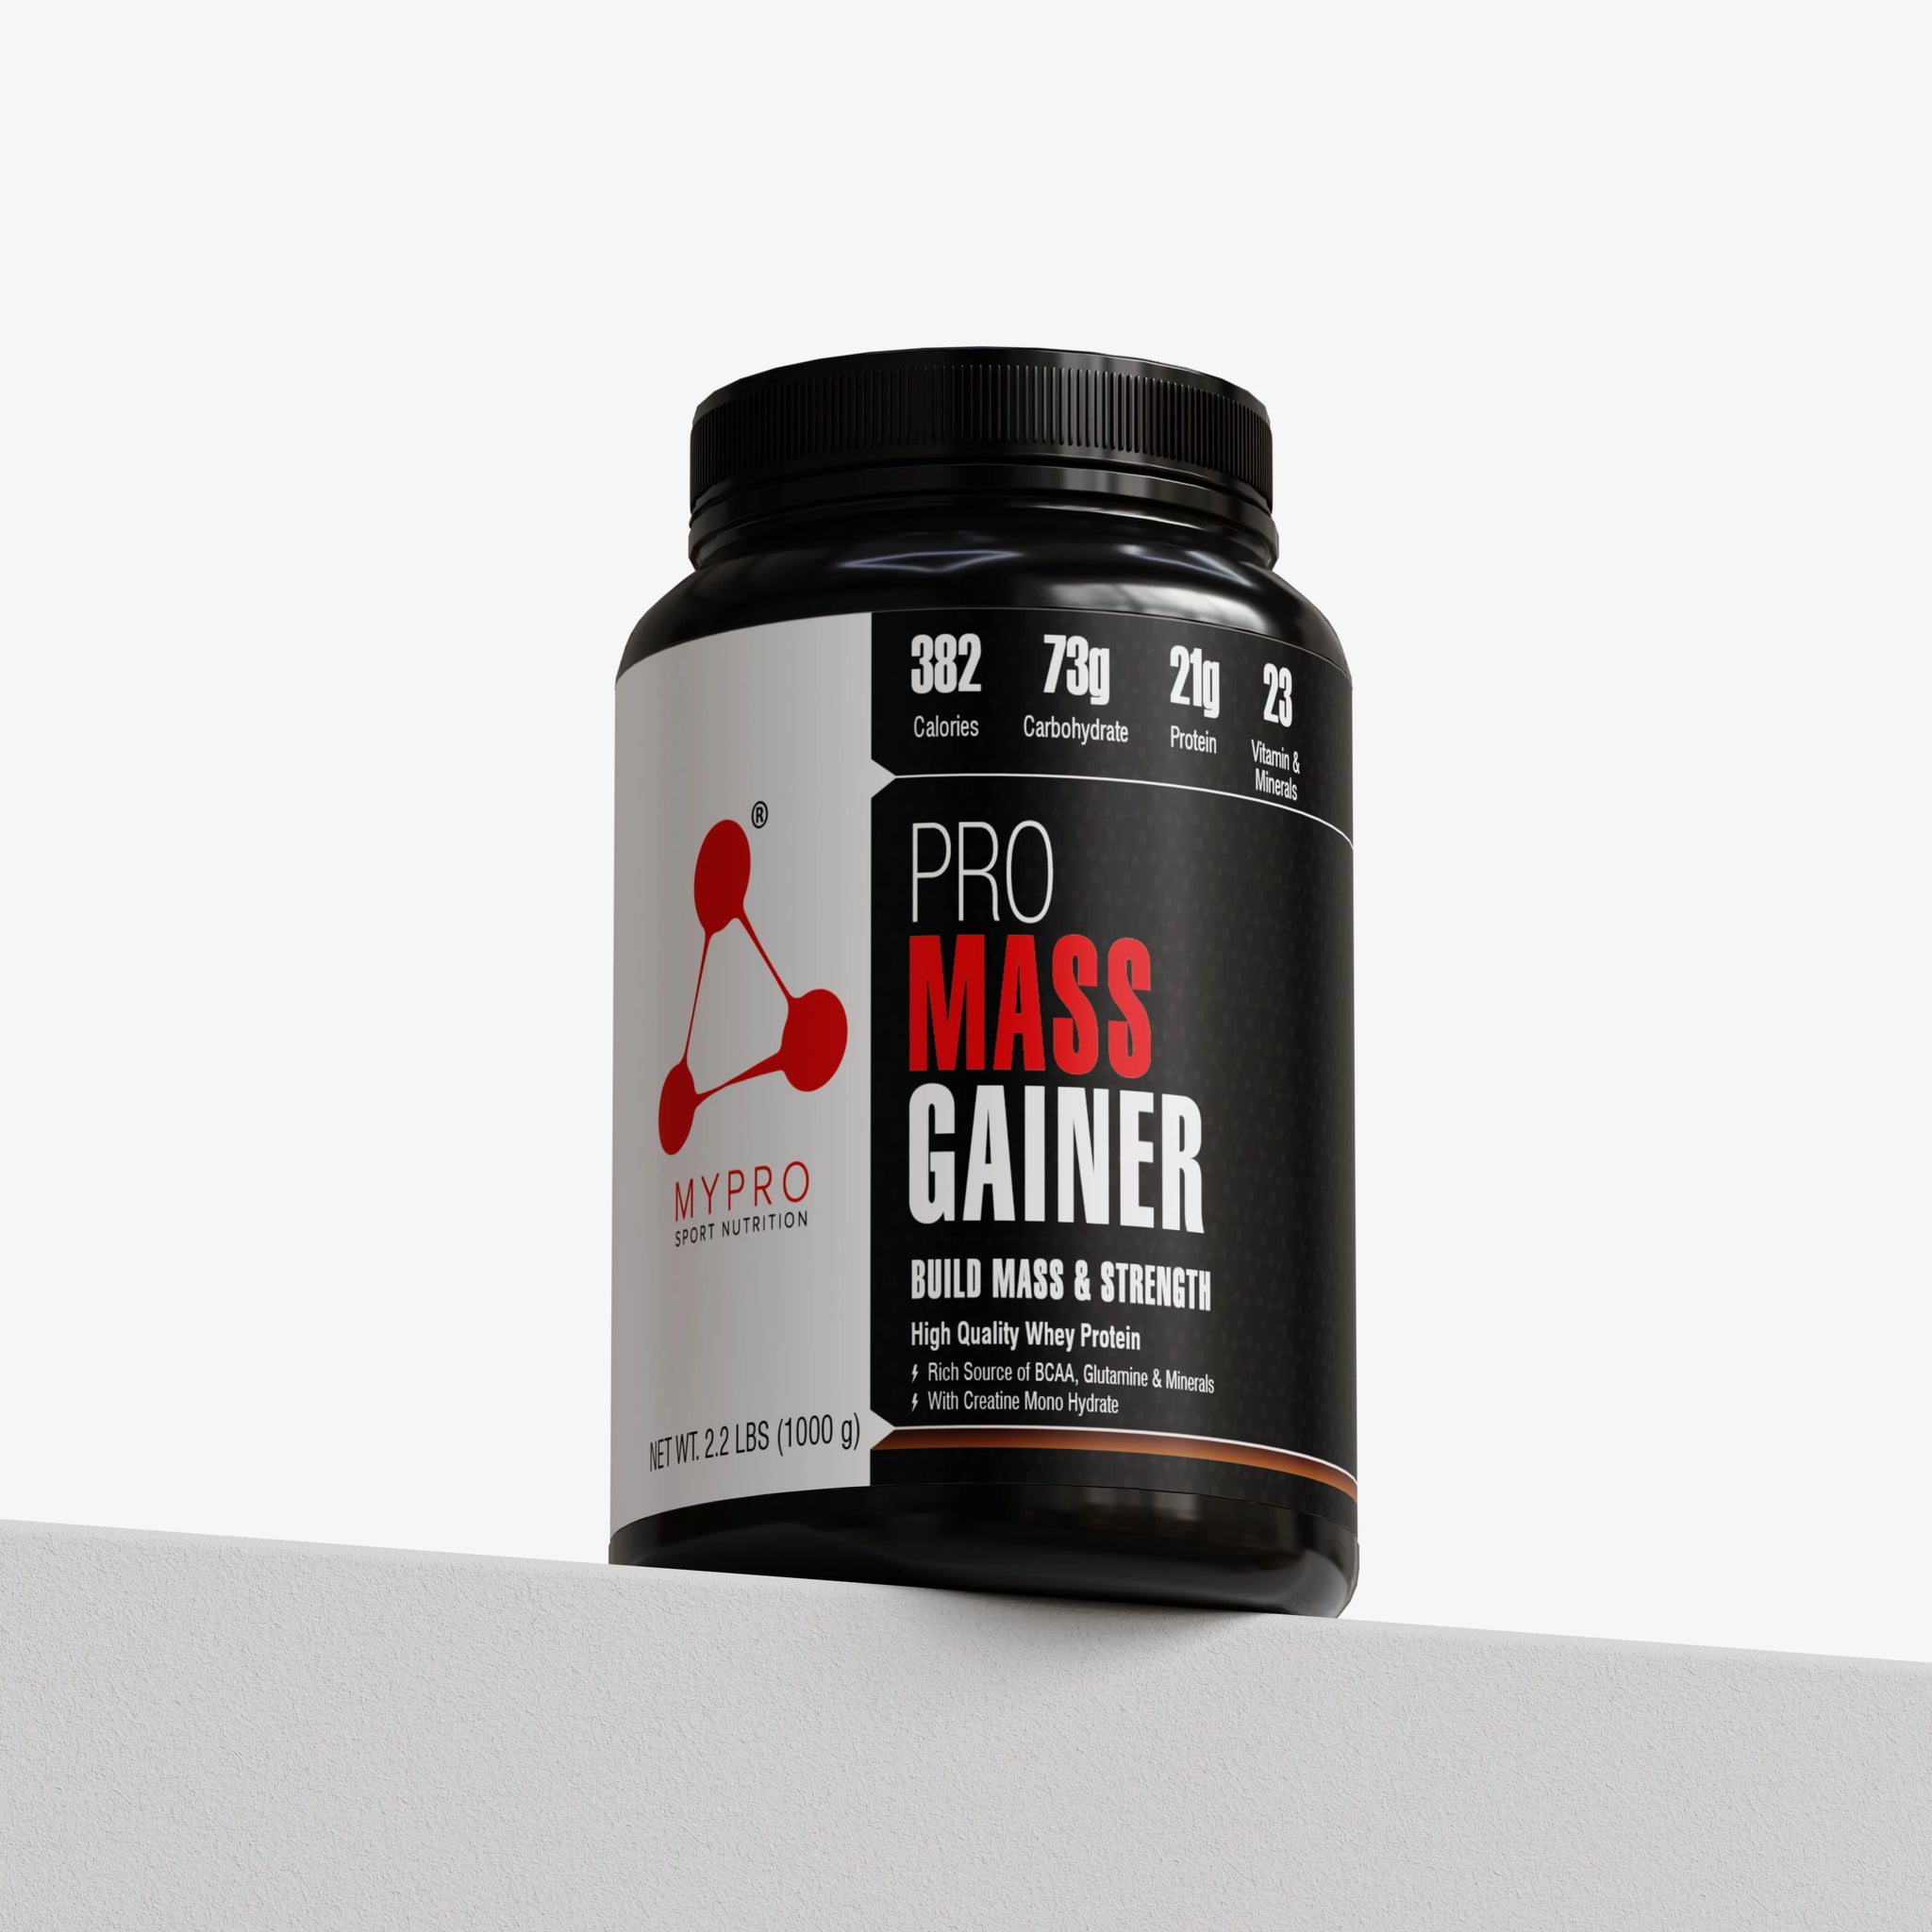 Pro Mass Gainer Supplement Powder